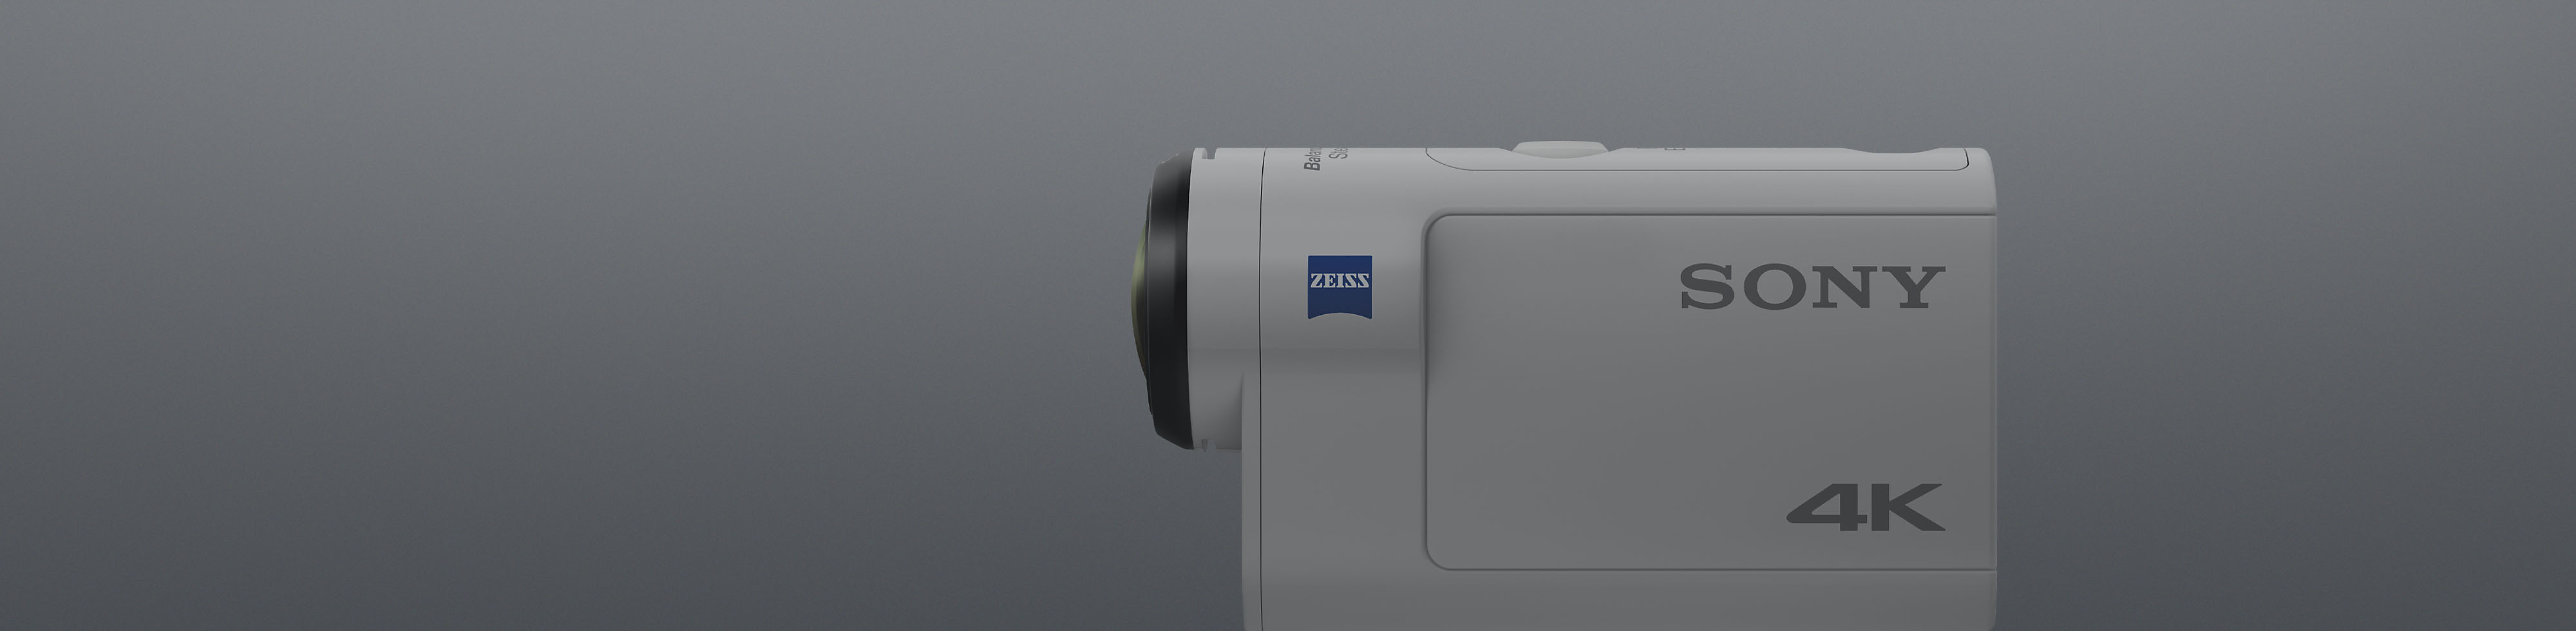 Вид сбоку на камеру Sony 4K Action Cam белого цвета